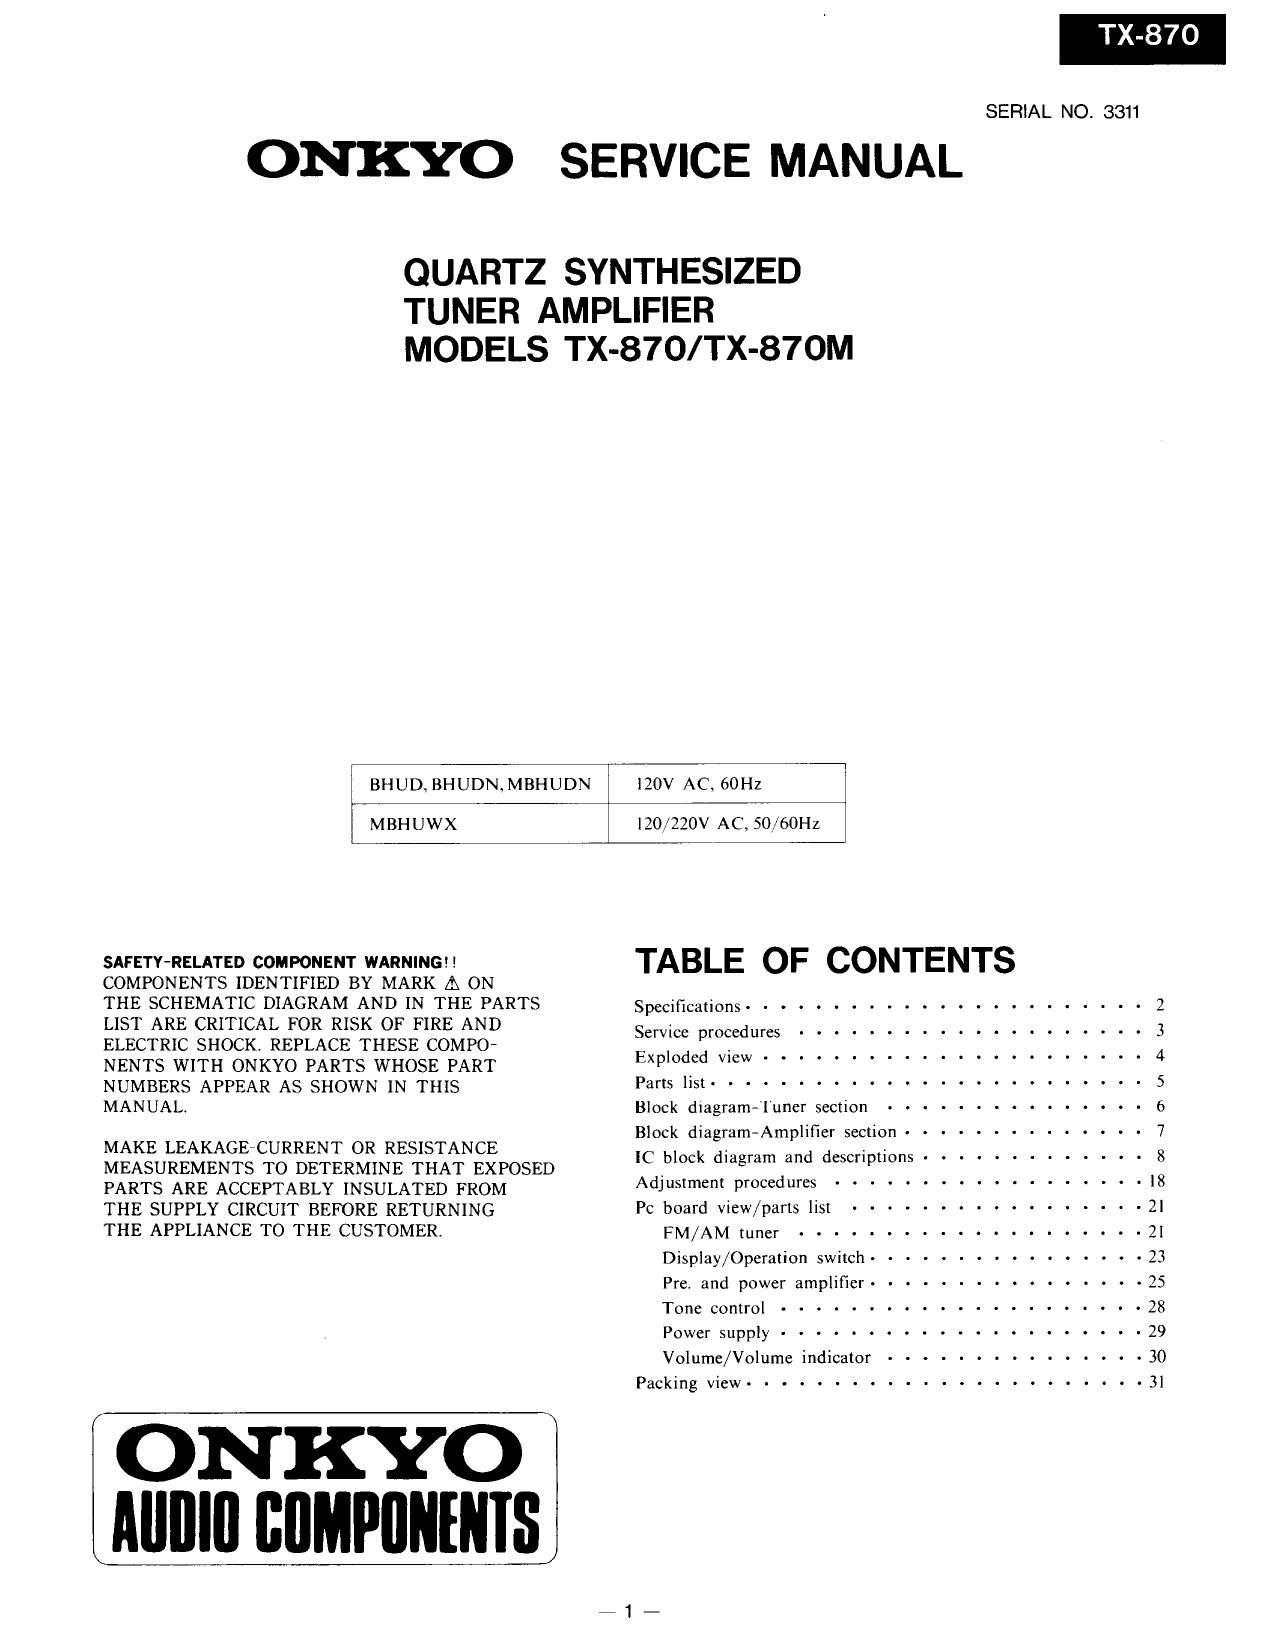 Onkyo TX 870 M Service Manual